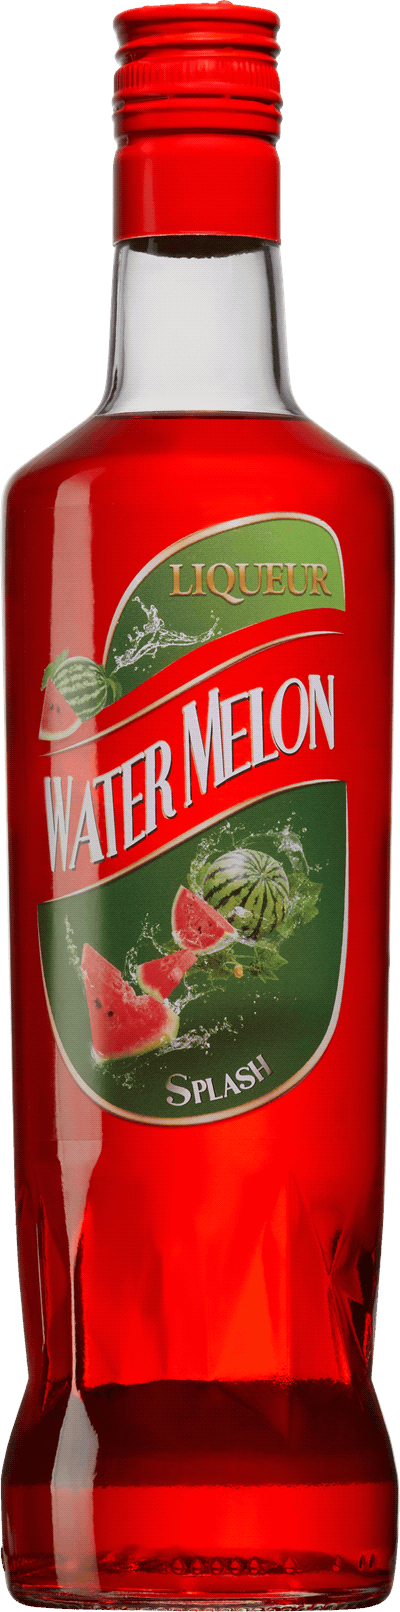 Produktbild för Watermelon splash